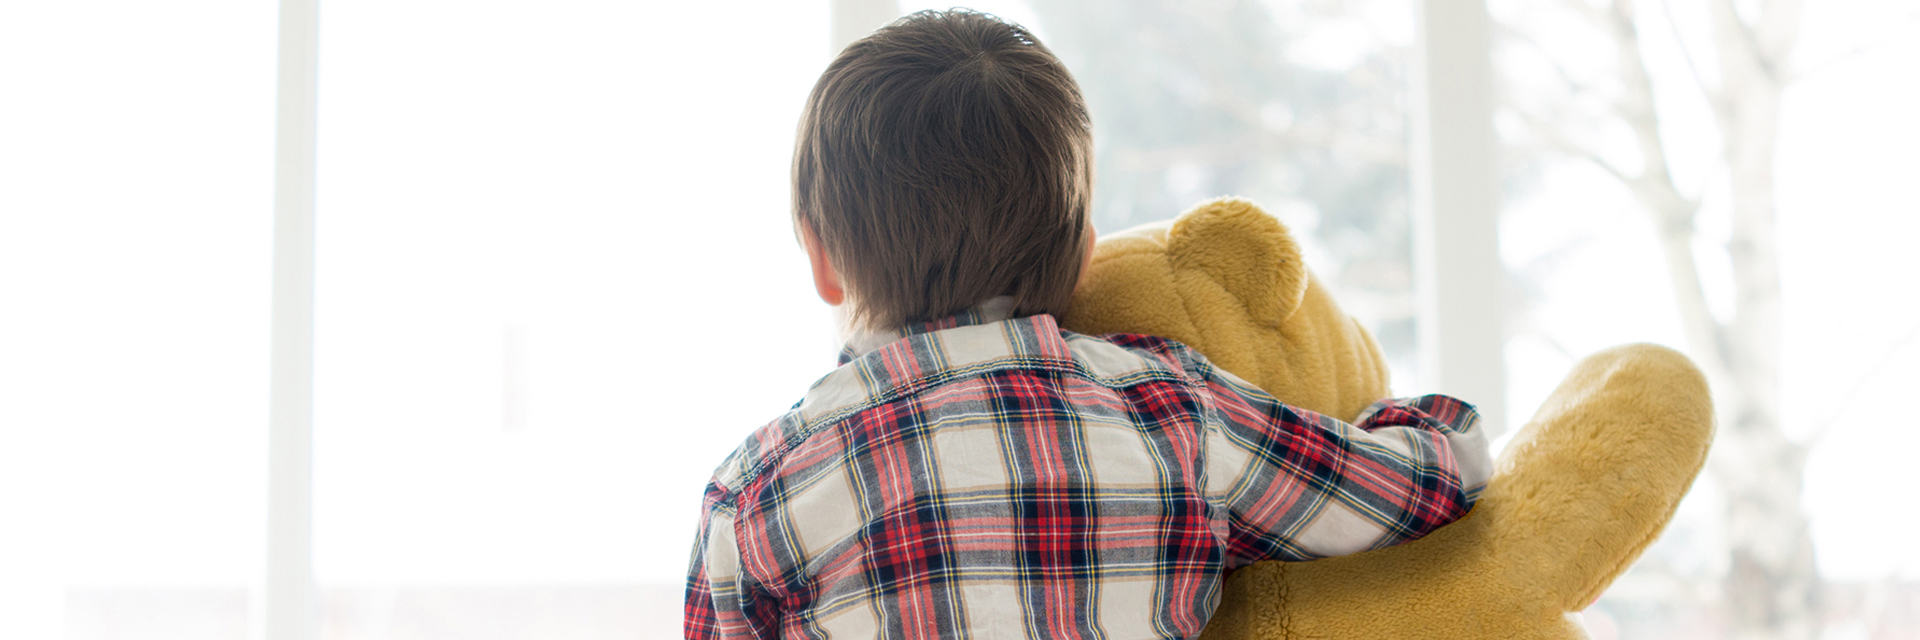 Little boy holding teddy bear near window